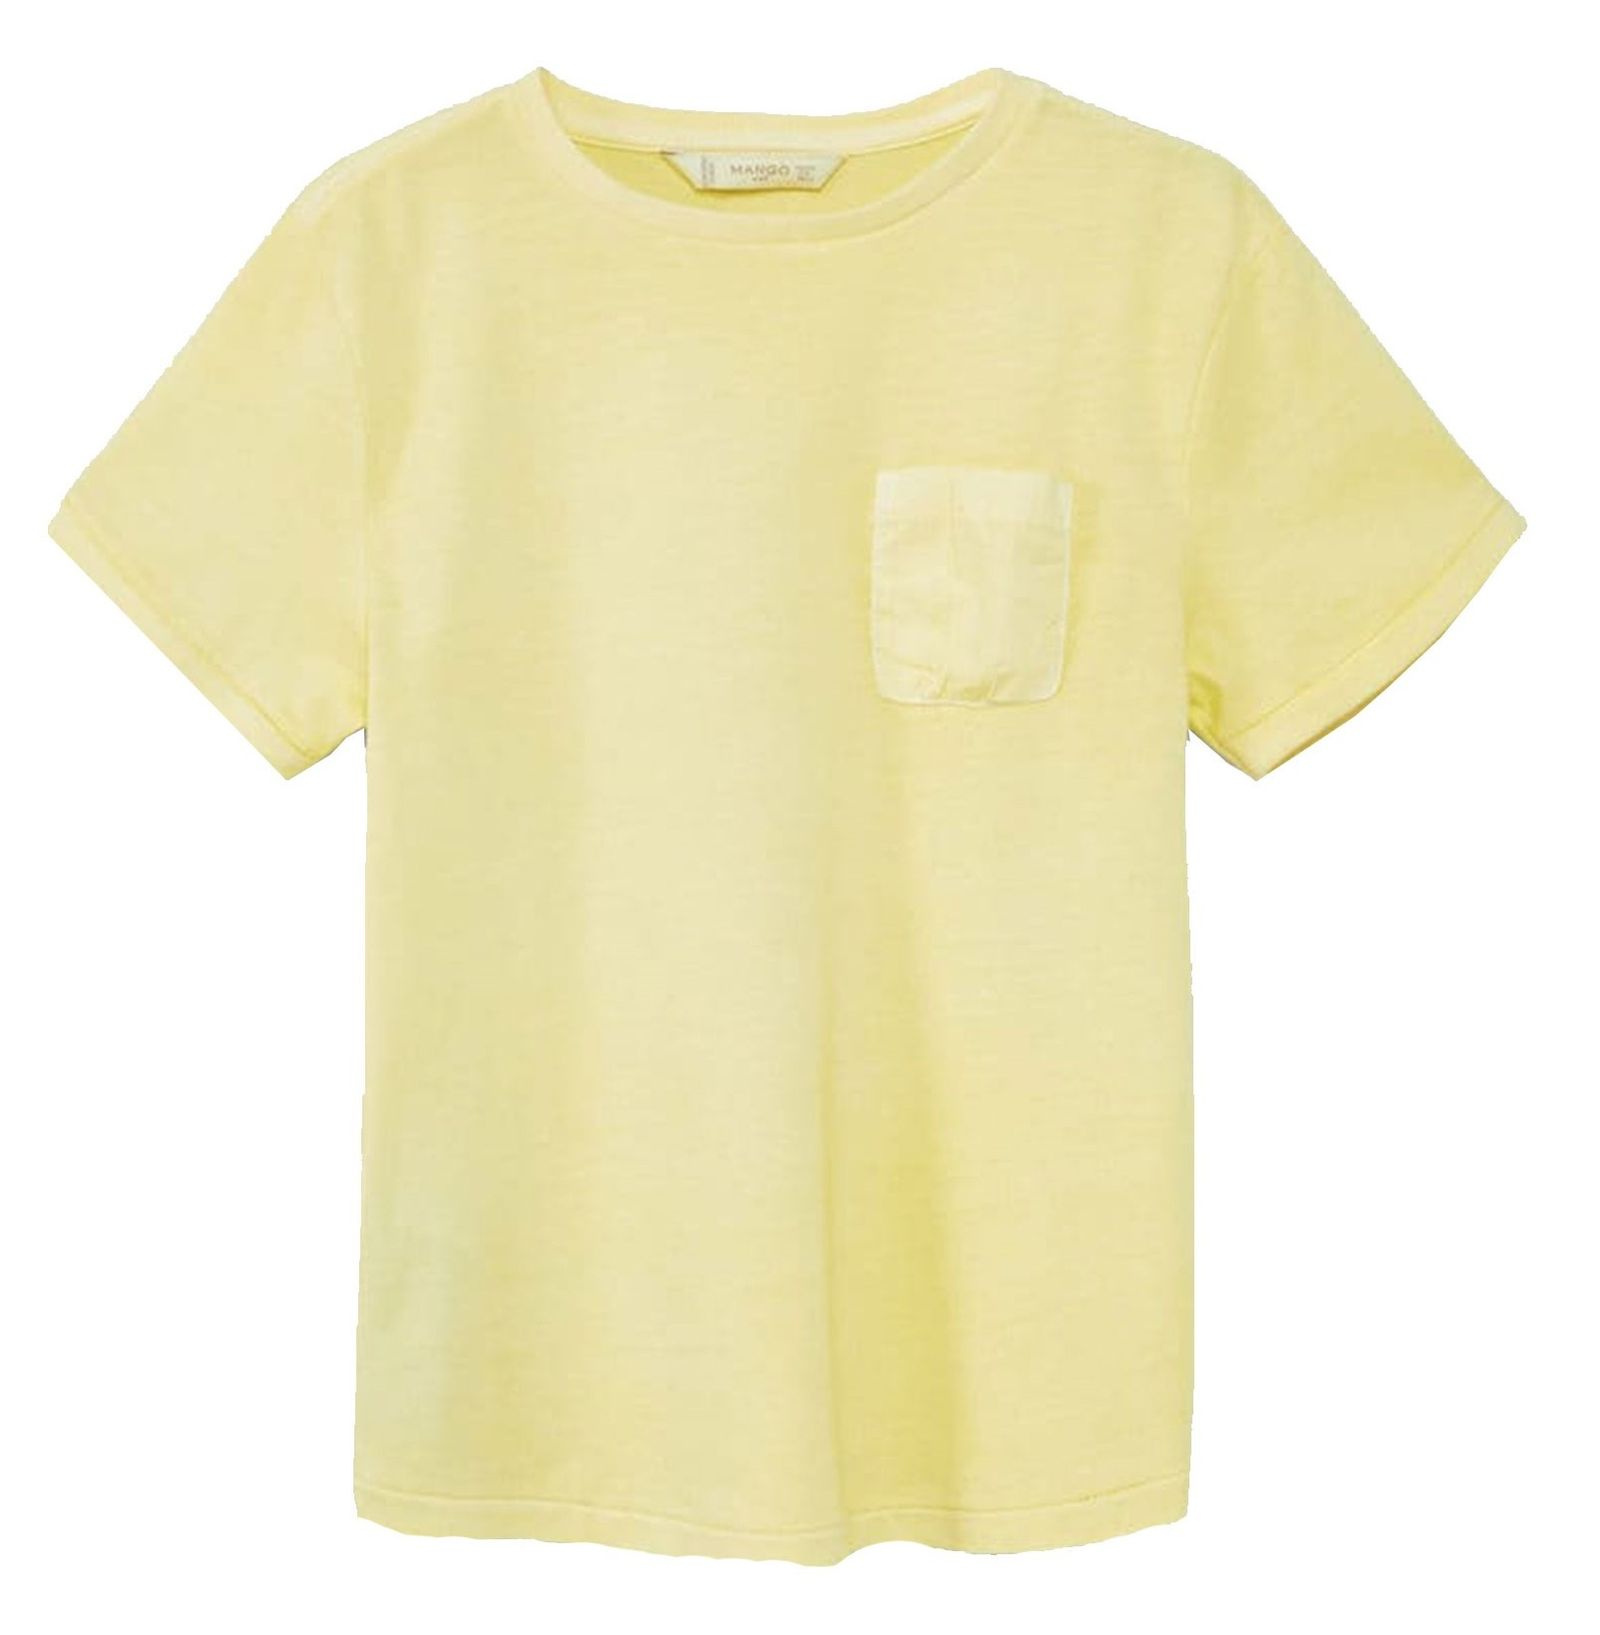 تی شرت نخی پسرانه - مانگو - زرد - 1